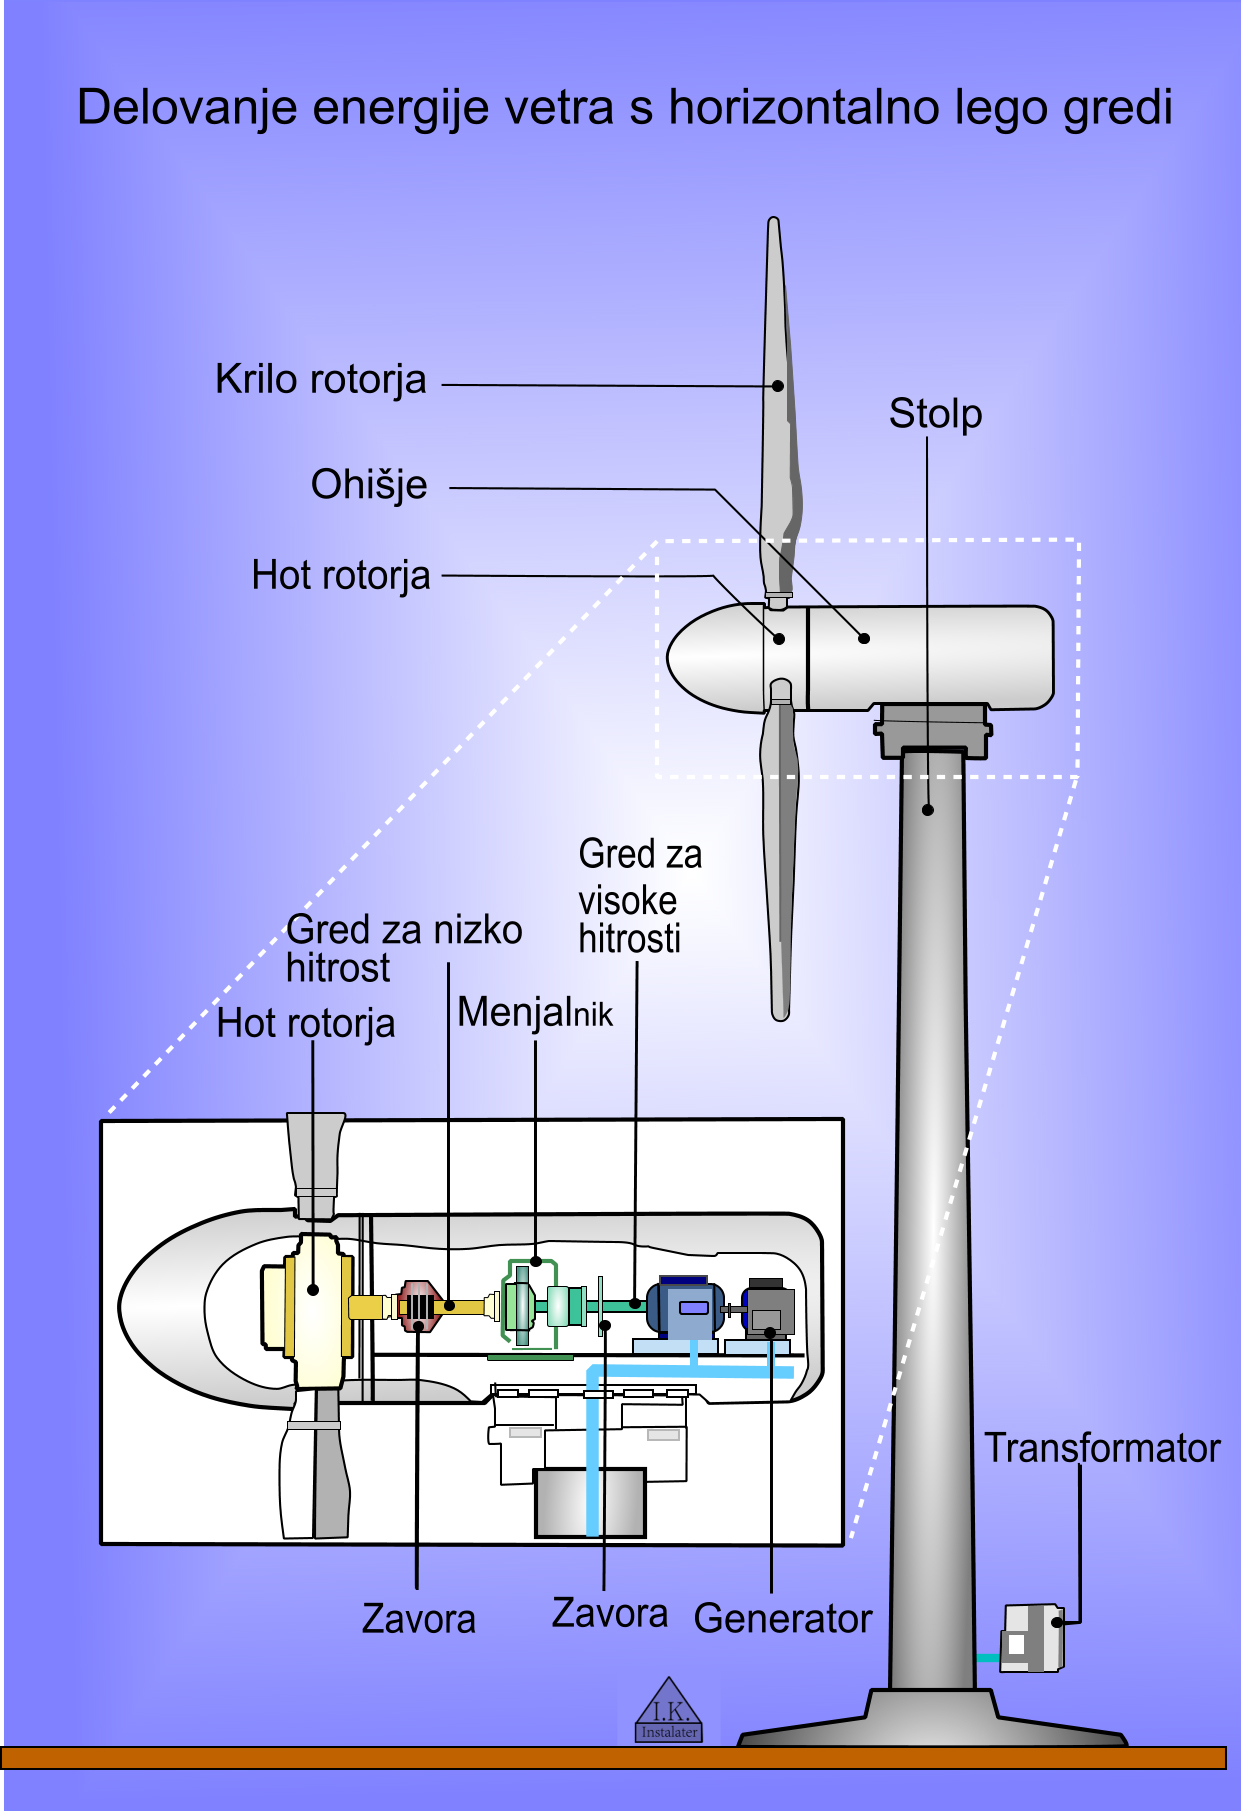 Vetrna turbina s horizontalno lego gredi